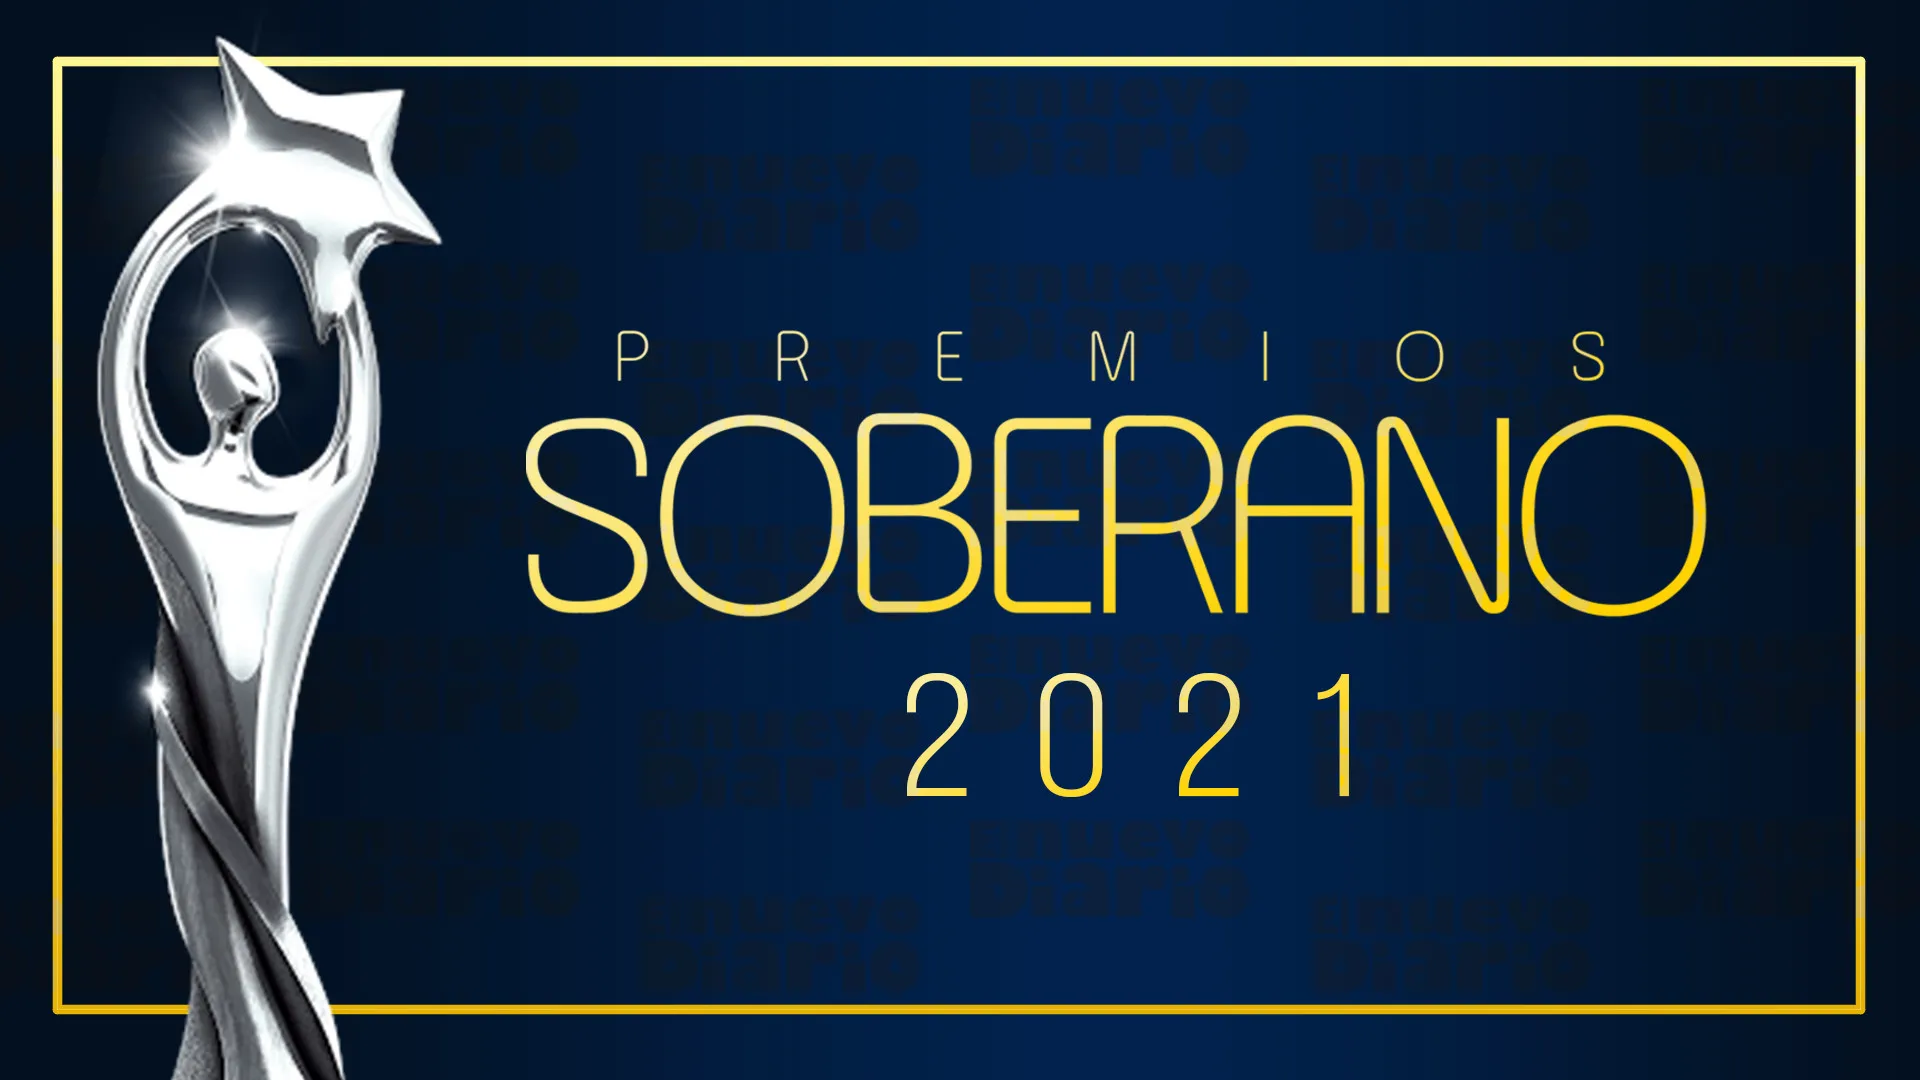 Premios Soberano se mantienen para próximo martes